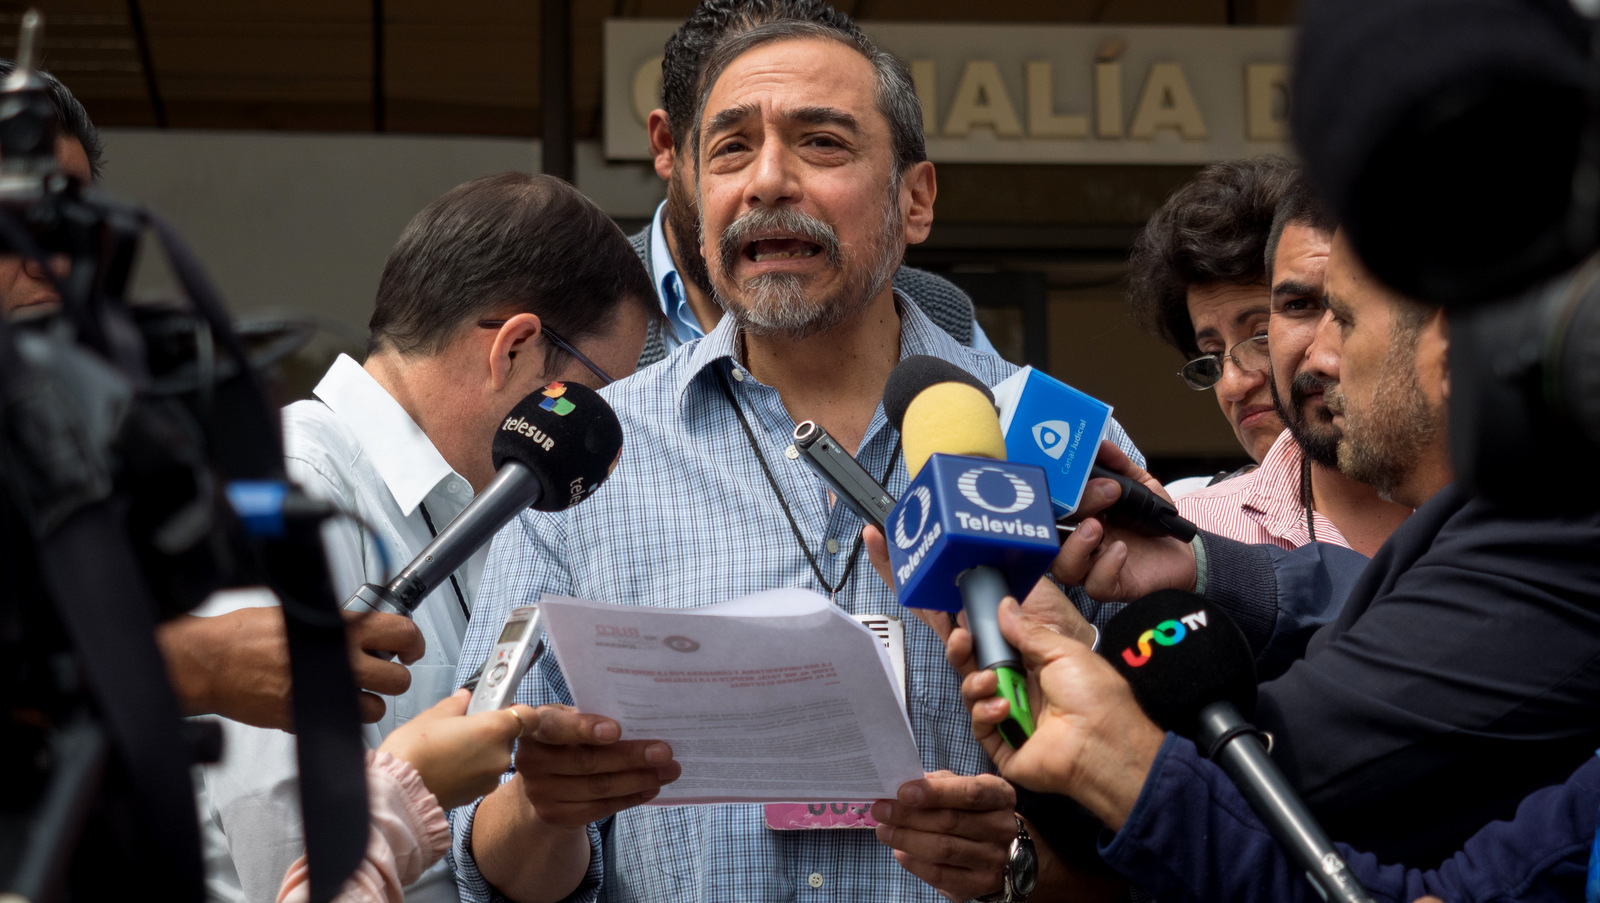 Сторонник Университета и Гражданская сеть за демократию обращаются к СМИ, в которых подробно изложены их требования Национального избирательного института, Мехико, 21 июня 2018 года. Хосе Луис Гранадос Сея